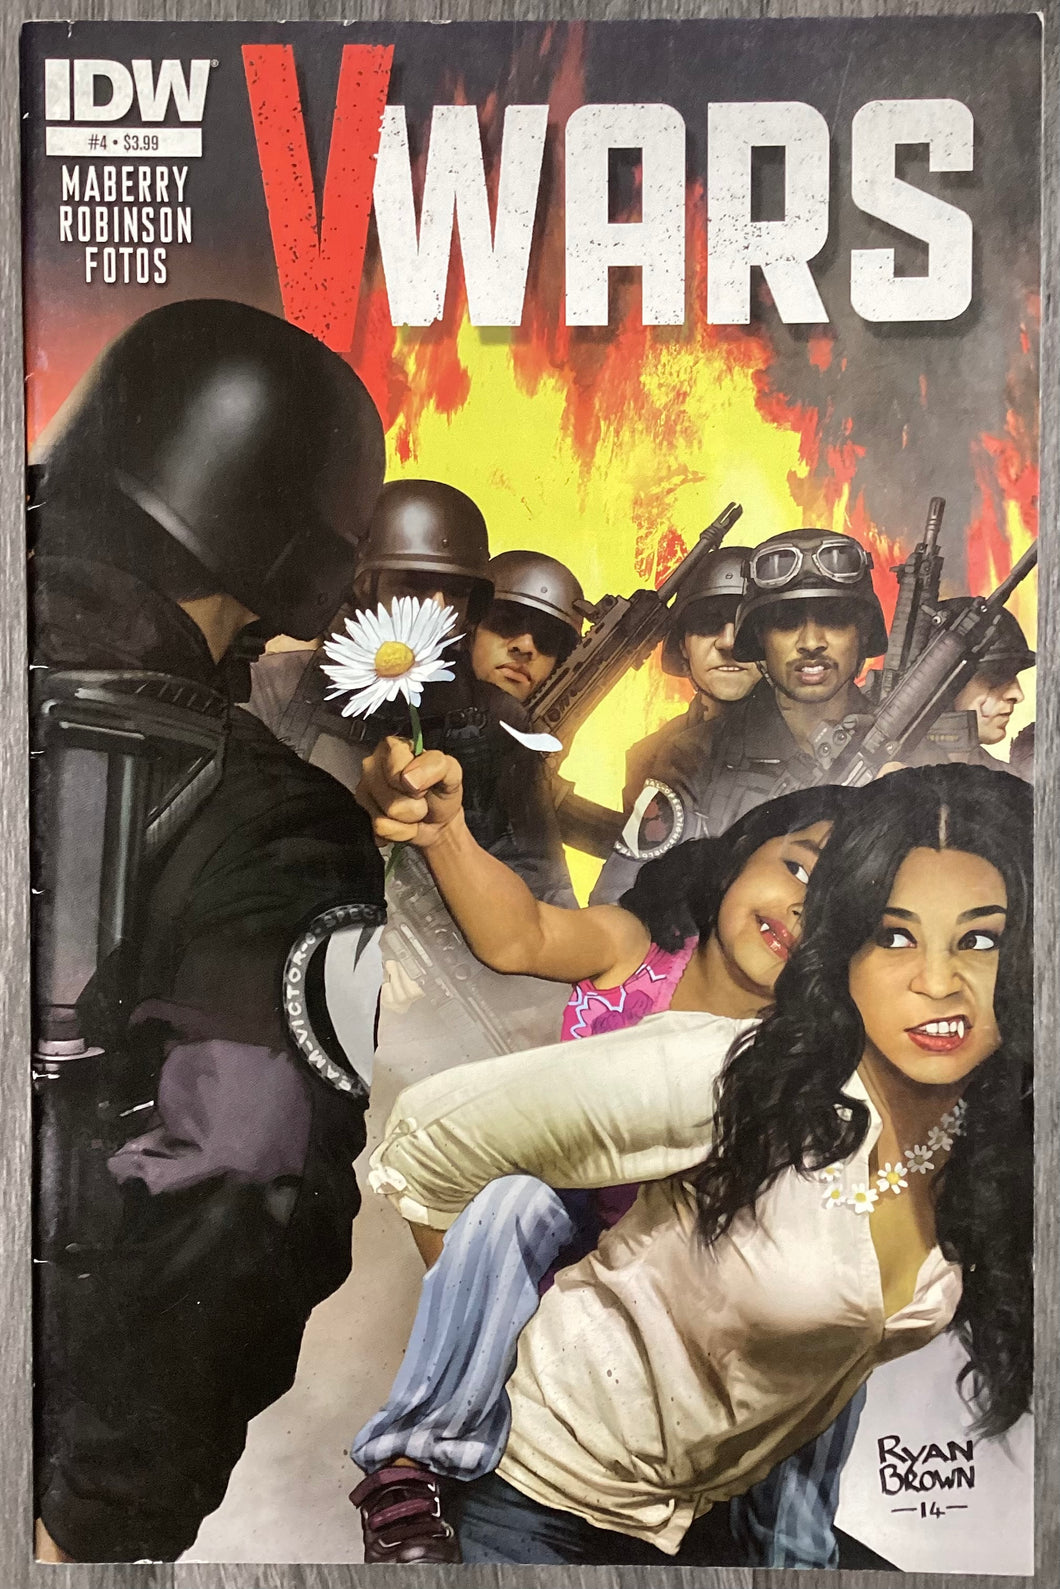 V Wars No. #4 2014 IDW Comics